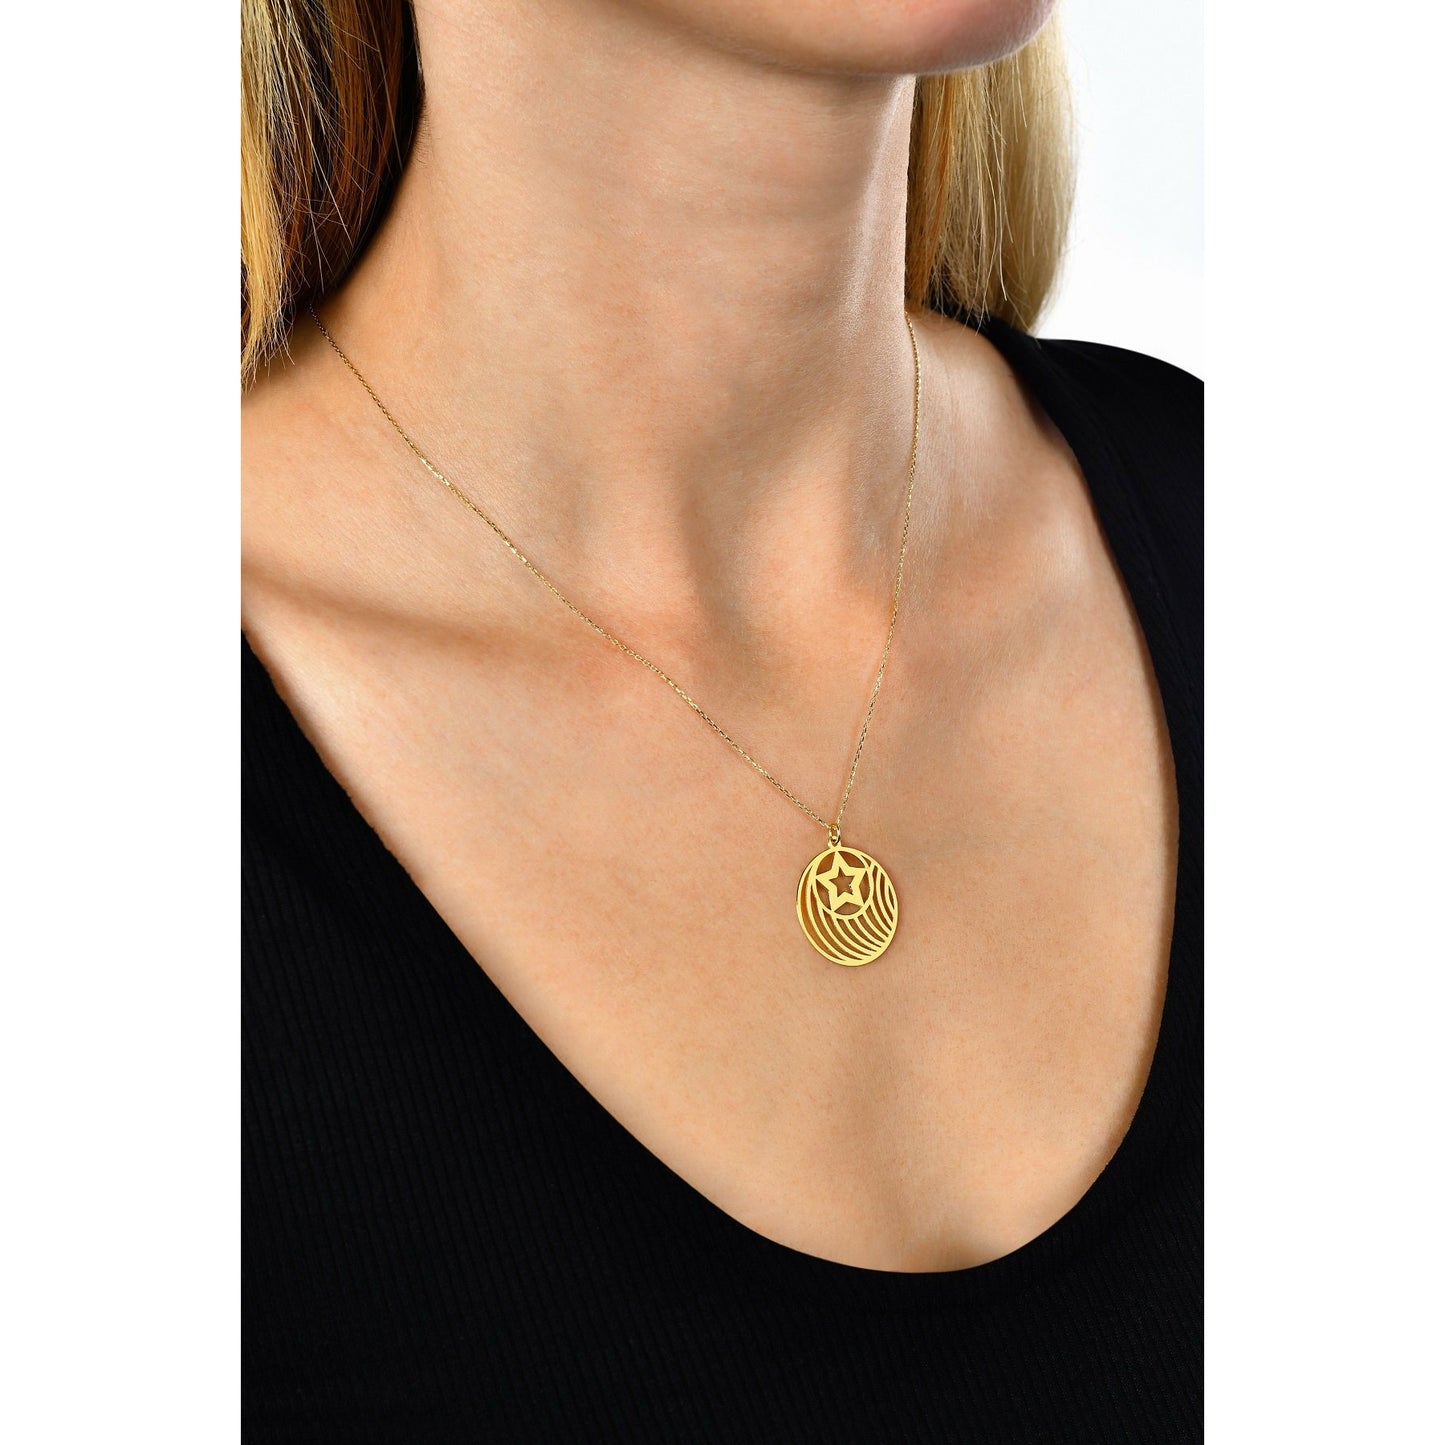 Special Design Gift 14k Gold Line Locket Star Necklace